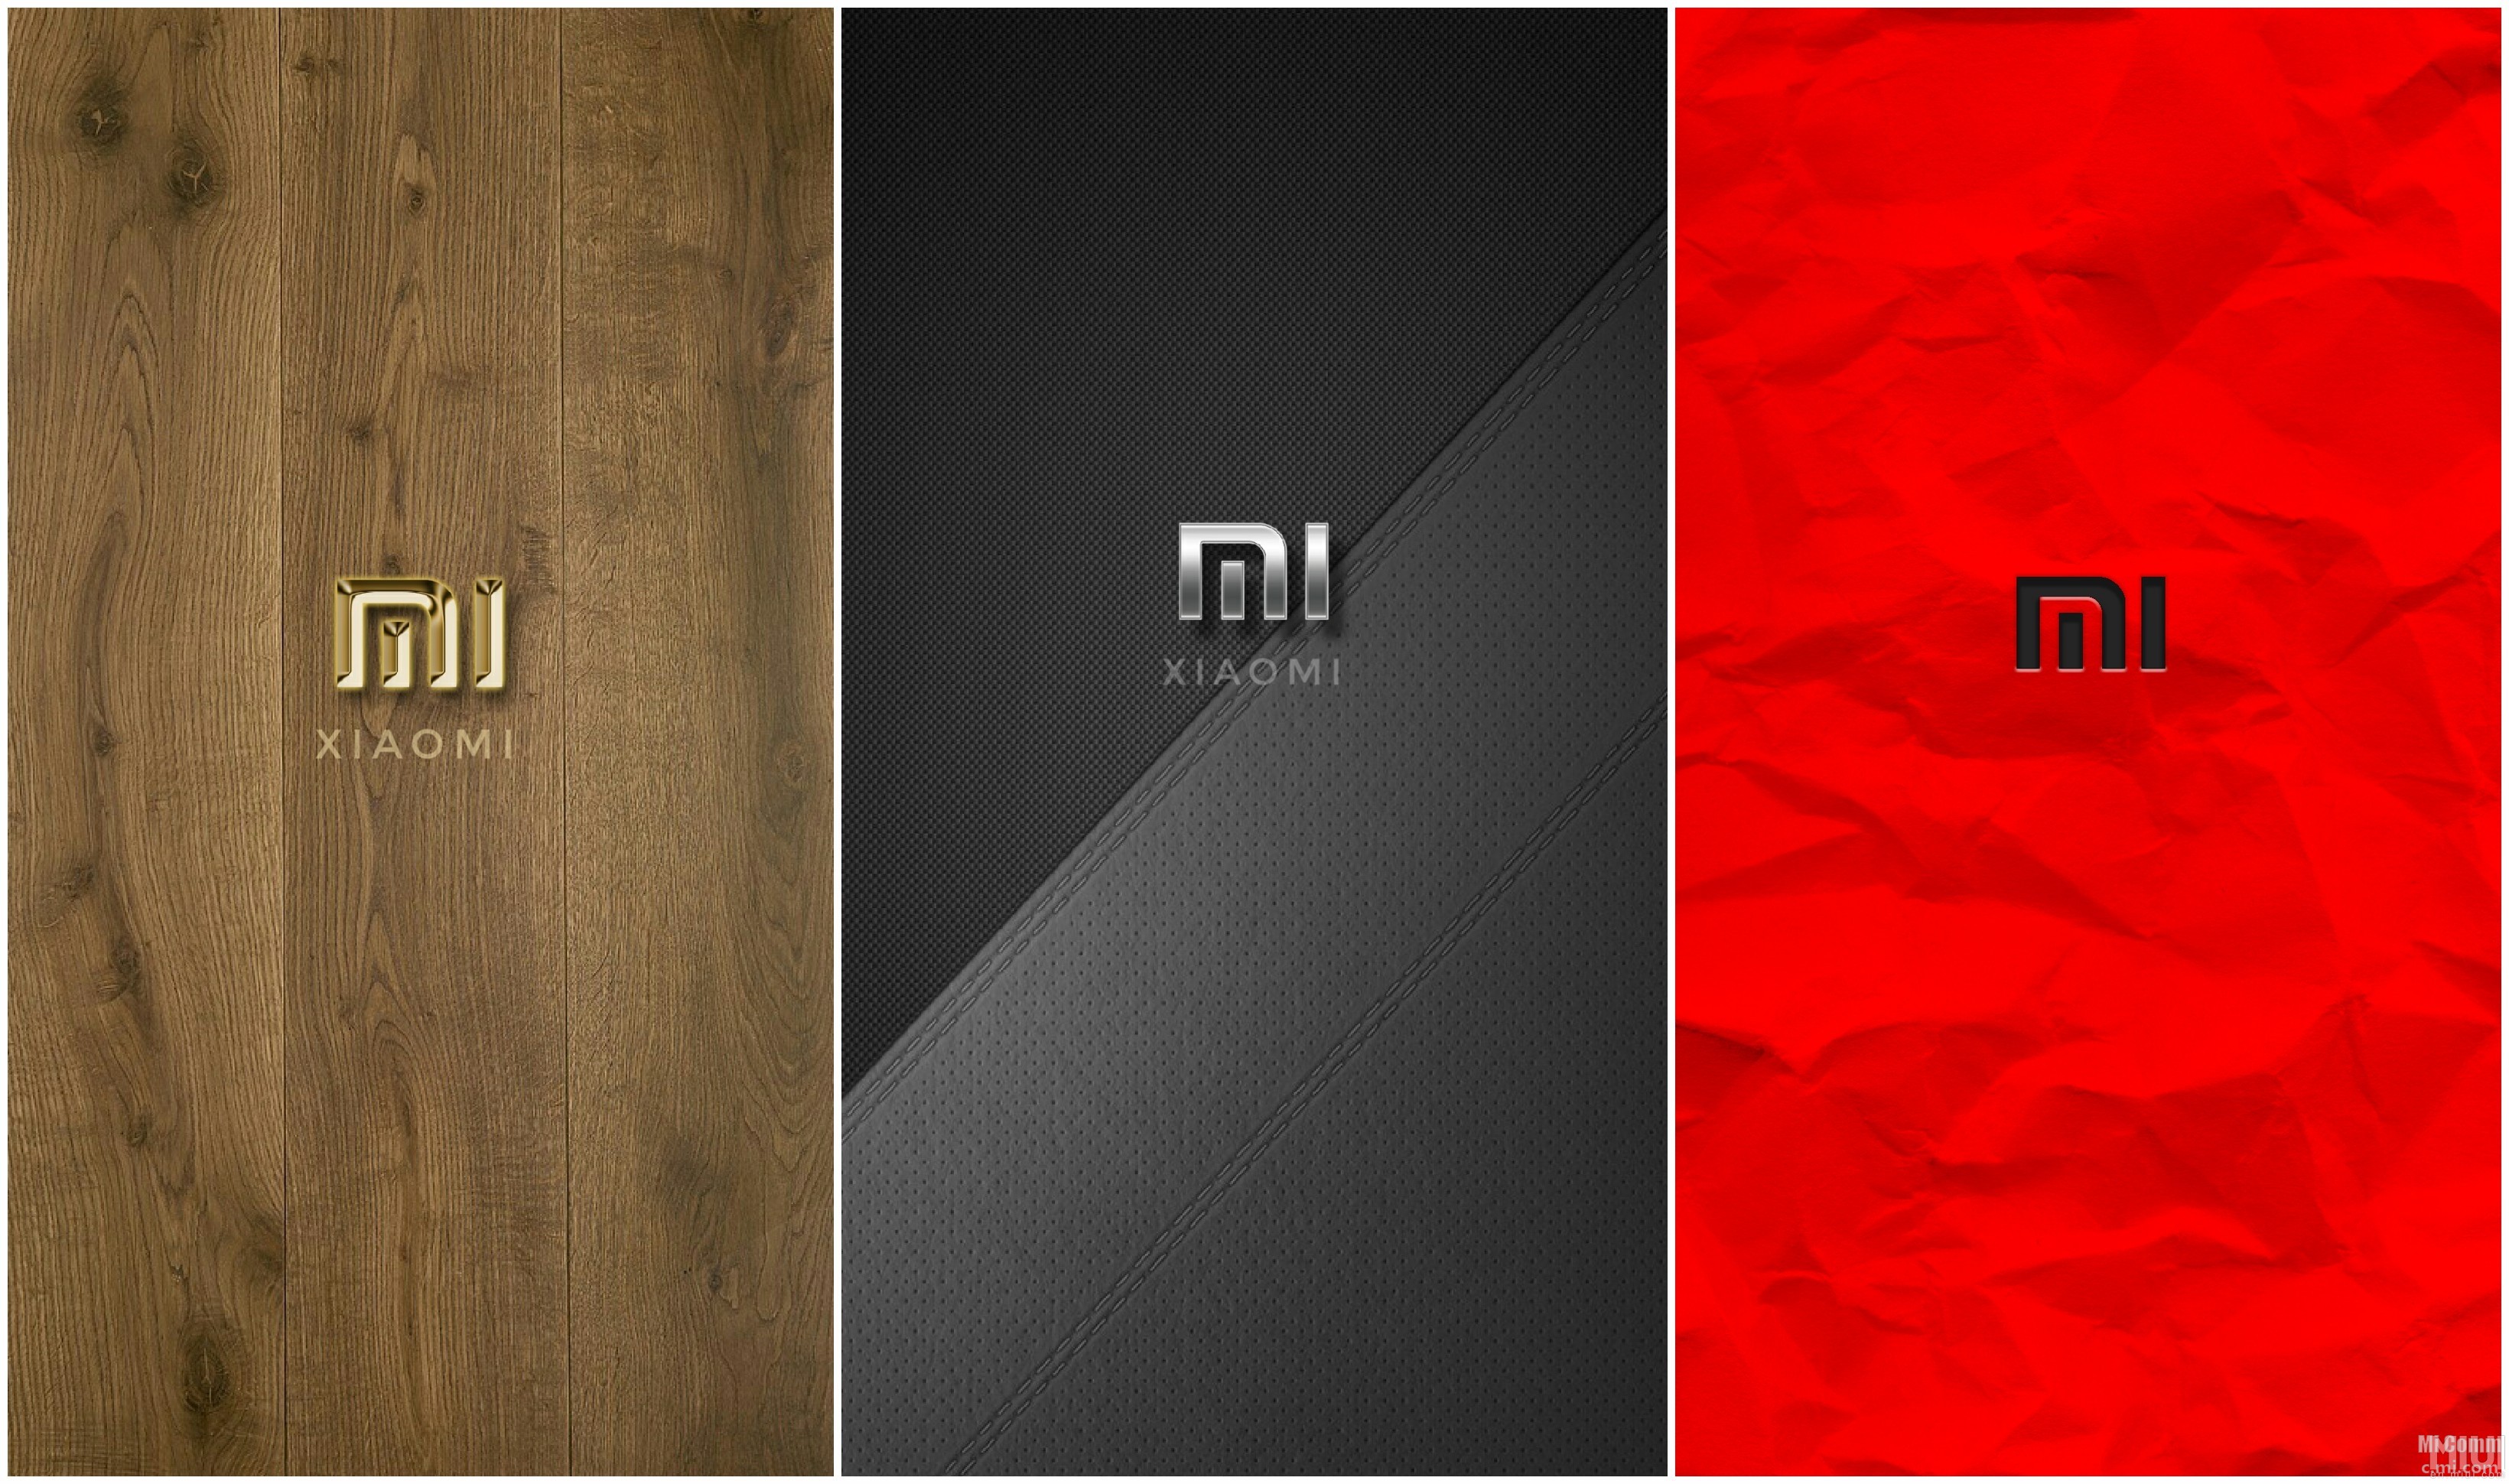 Песня на телефон редми. Xiaomi логотип. Обои ксиоми. Красивый логотип Xiaomi. Оригинальные обои Сяоми.